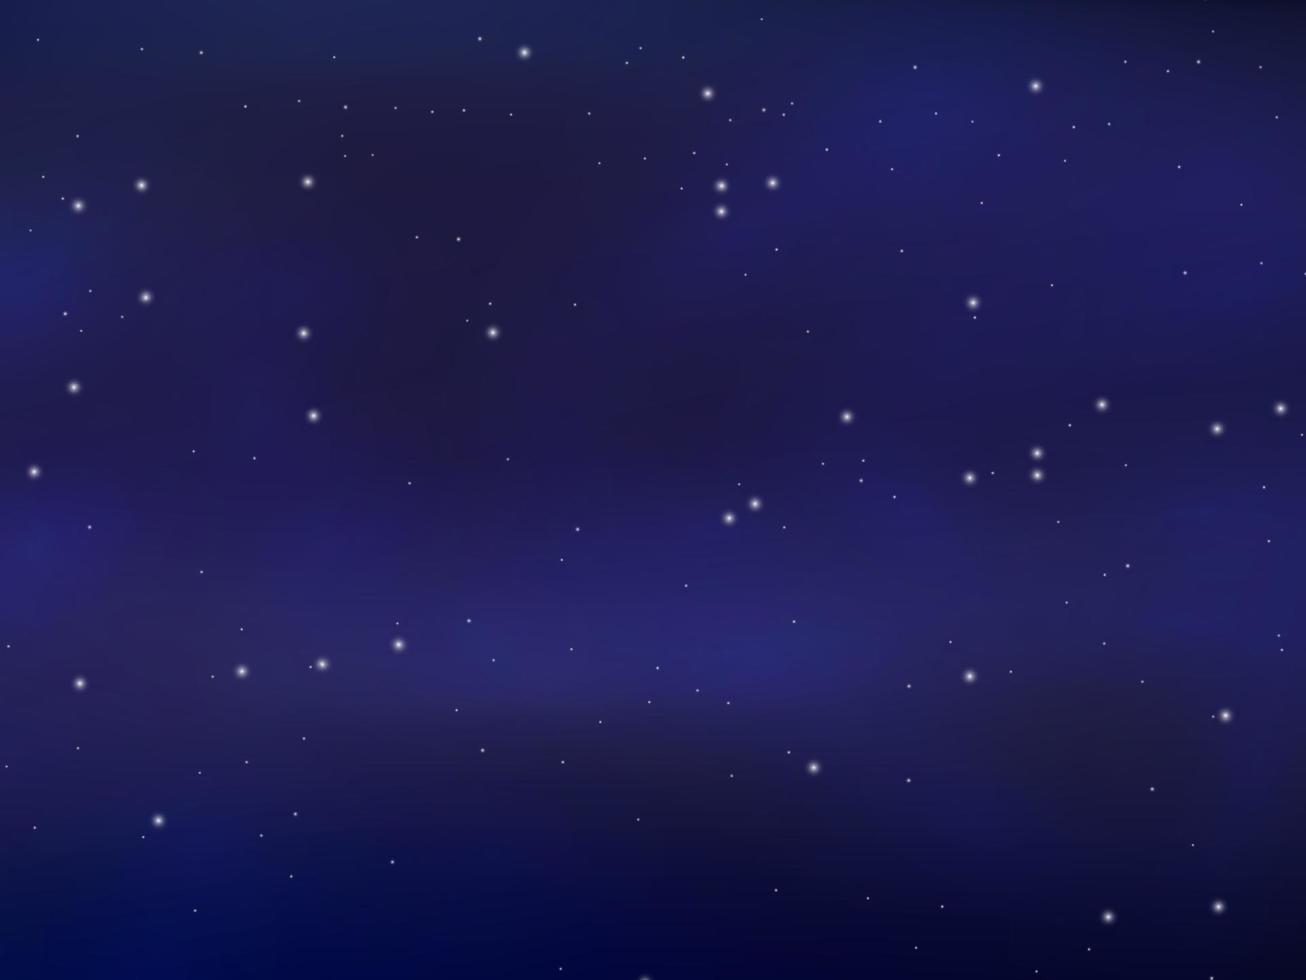 notte splendente stellato cielo, blu spazio sfondo con stelle, spazio. bellissimo notte cielo. vettore